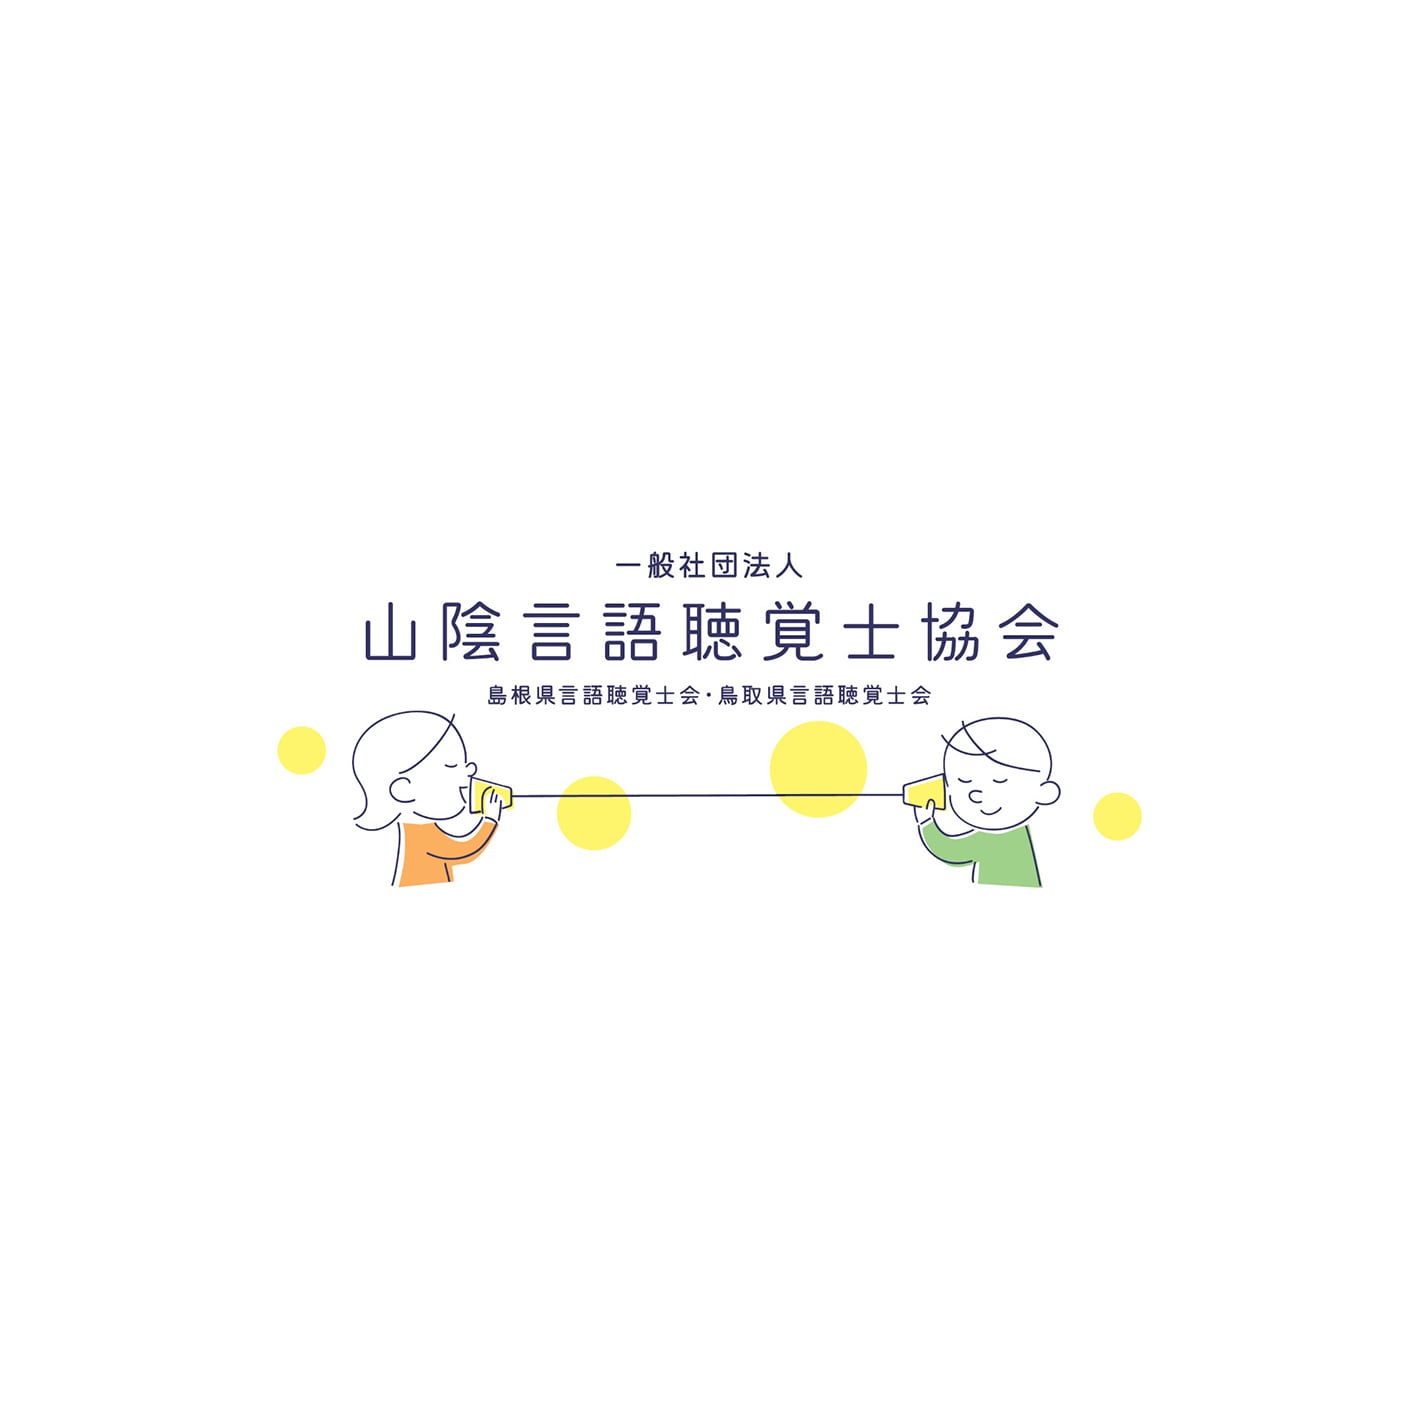 山陰言語聴覚士協会 (鳥取県言語聴覚士会) ロゴ